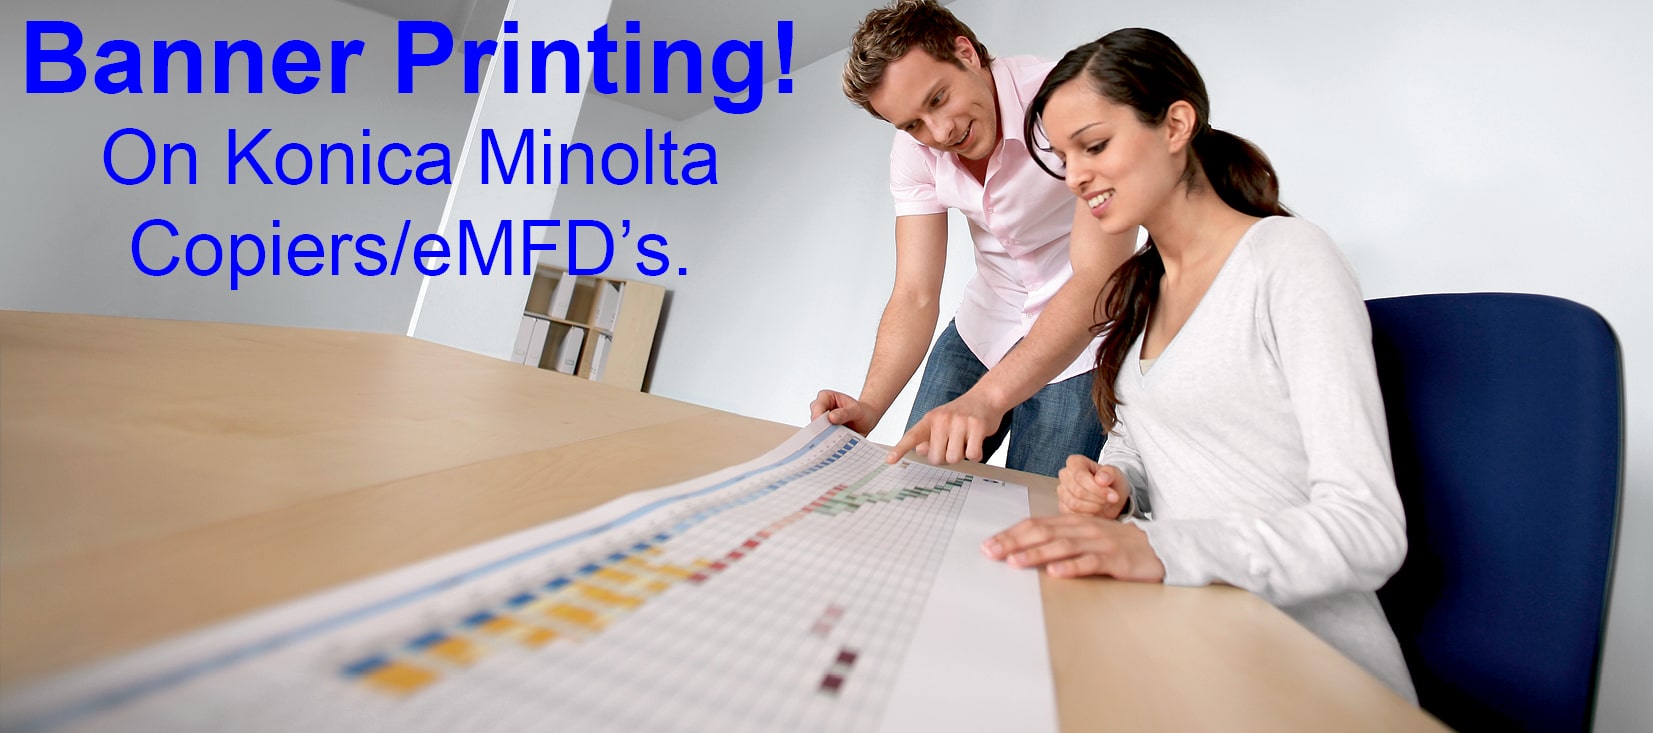 banner printing Konica Minolta copiers